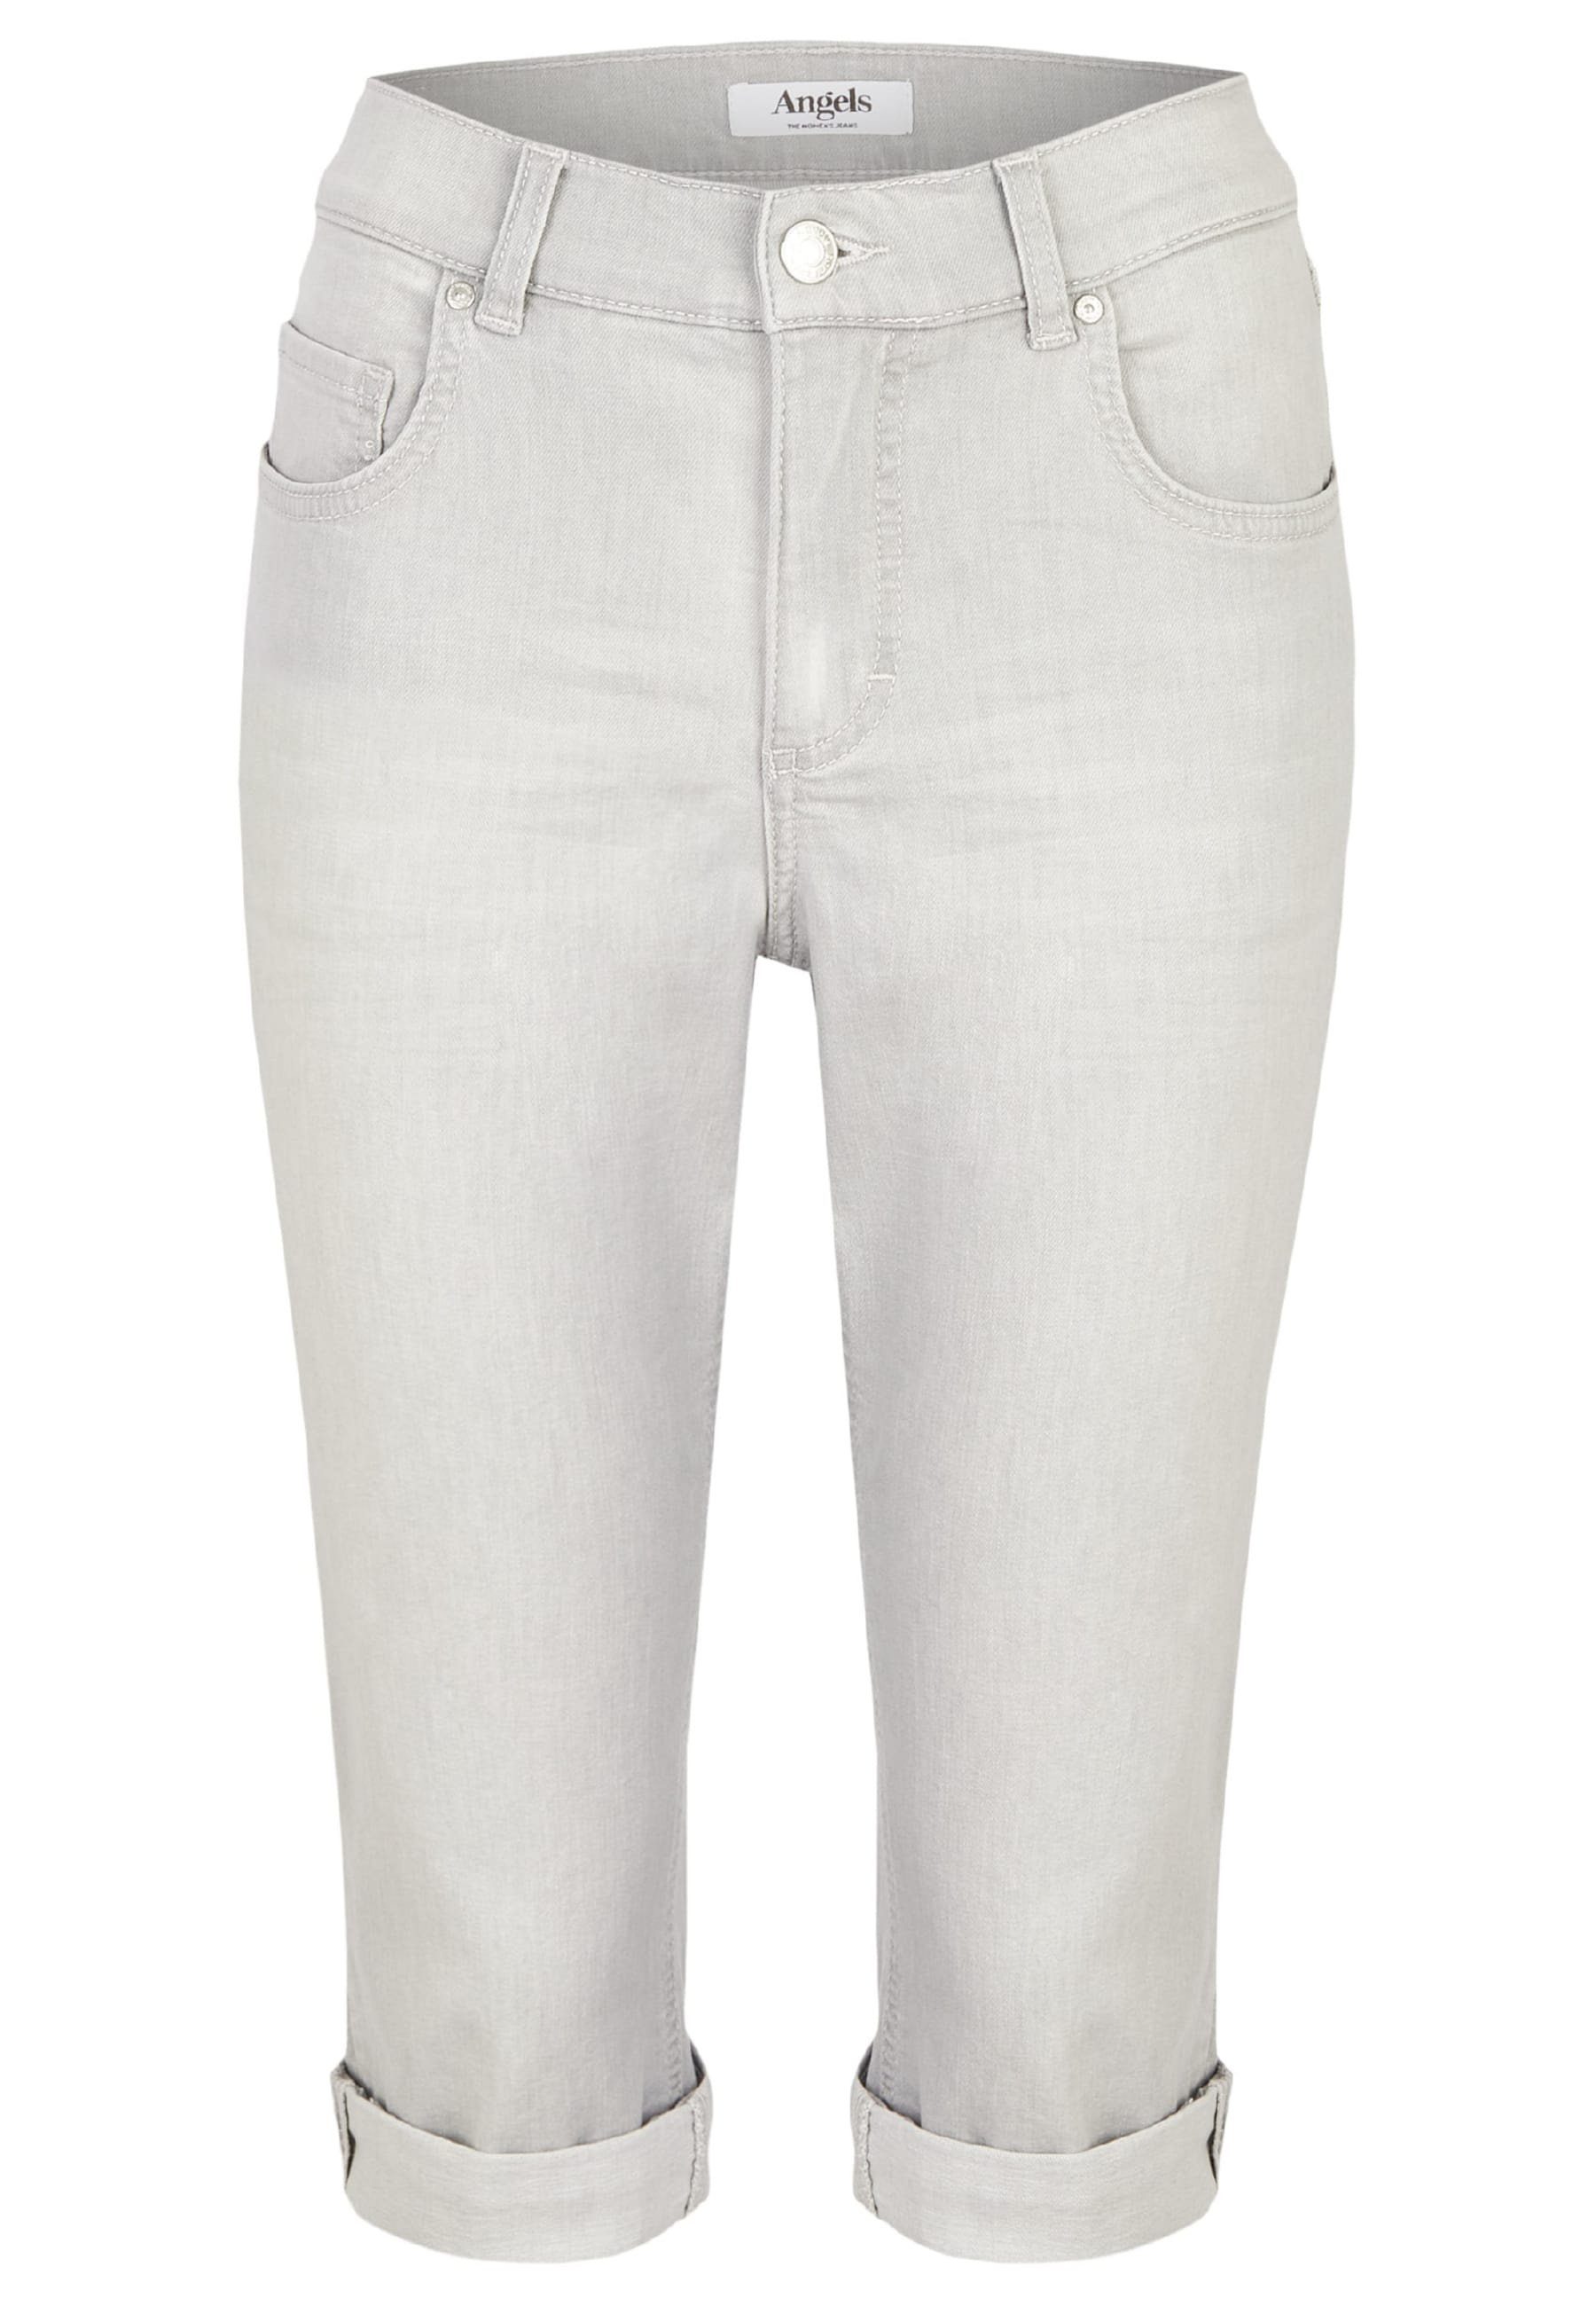 ANGELS 5-Pocket-Jeans mit Jeans Used-Look TU Capri Label-Applikationen mit hellgrau